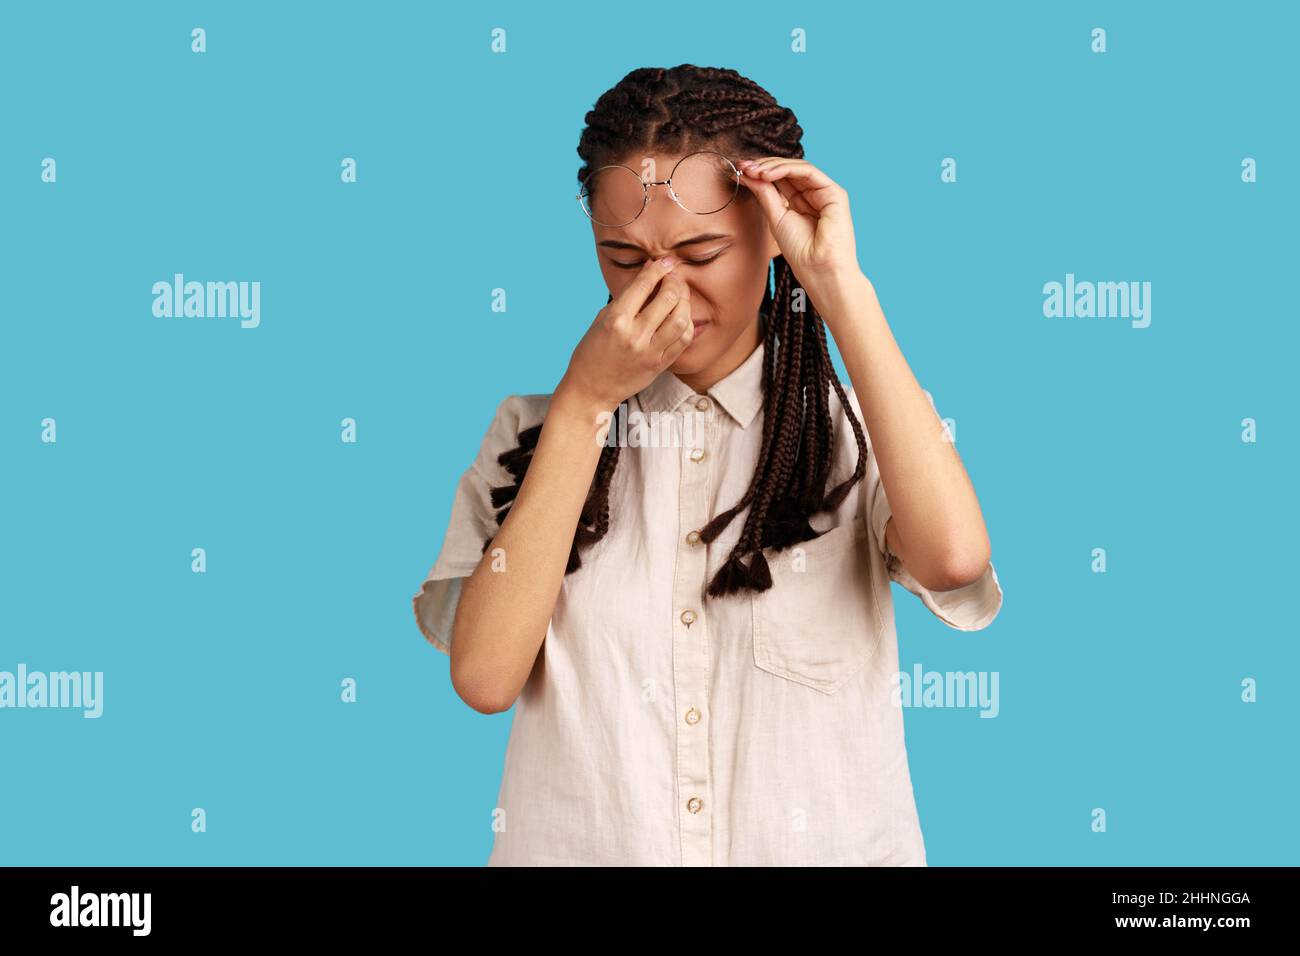 Portrait d'une femme frustrée avec des dreadlocks noirs touchant les yeux fermés, pleurant de dépression, de douleur ou de douleur, se sentant désespéré, portant une chemise blanche.Studio d'intérieur isolé sur fond bleu. Banque D'Images